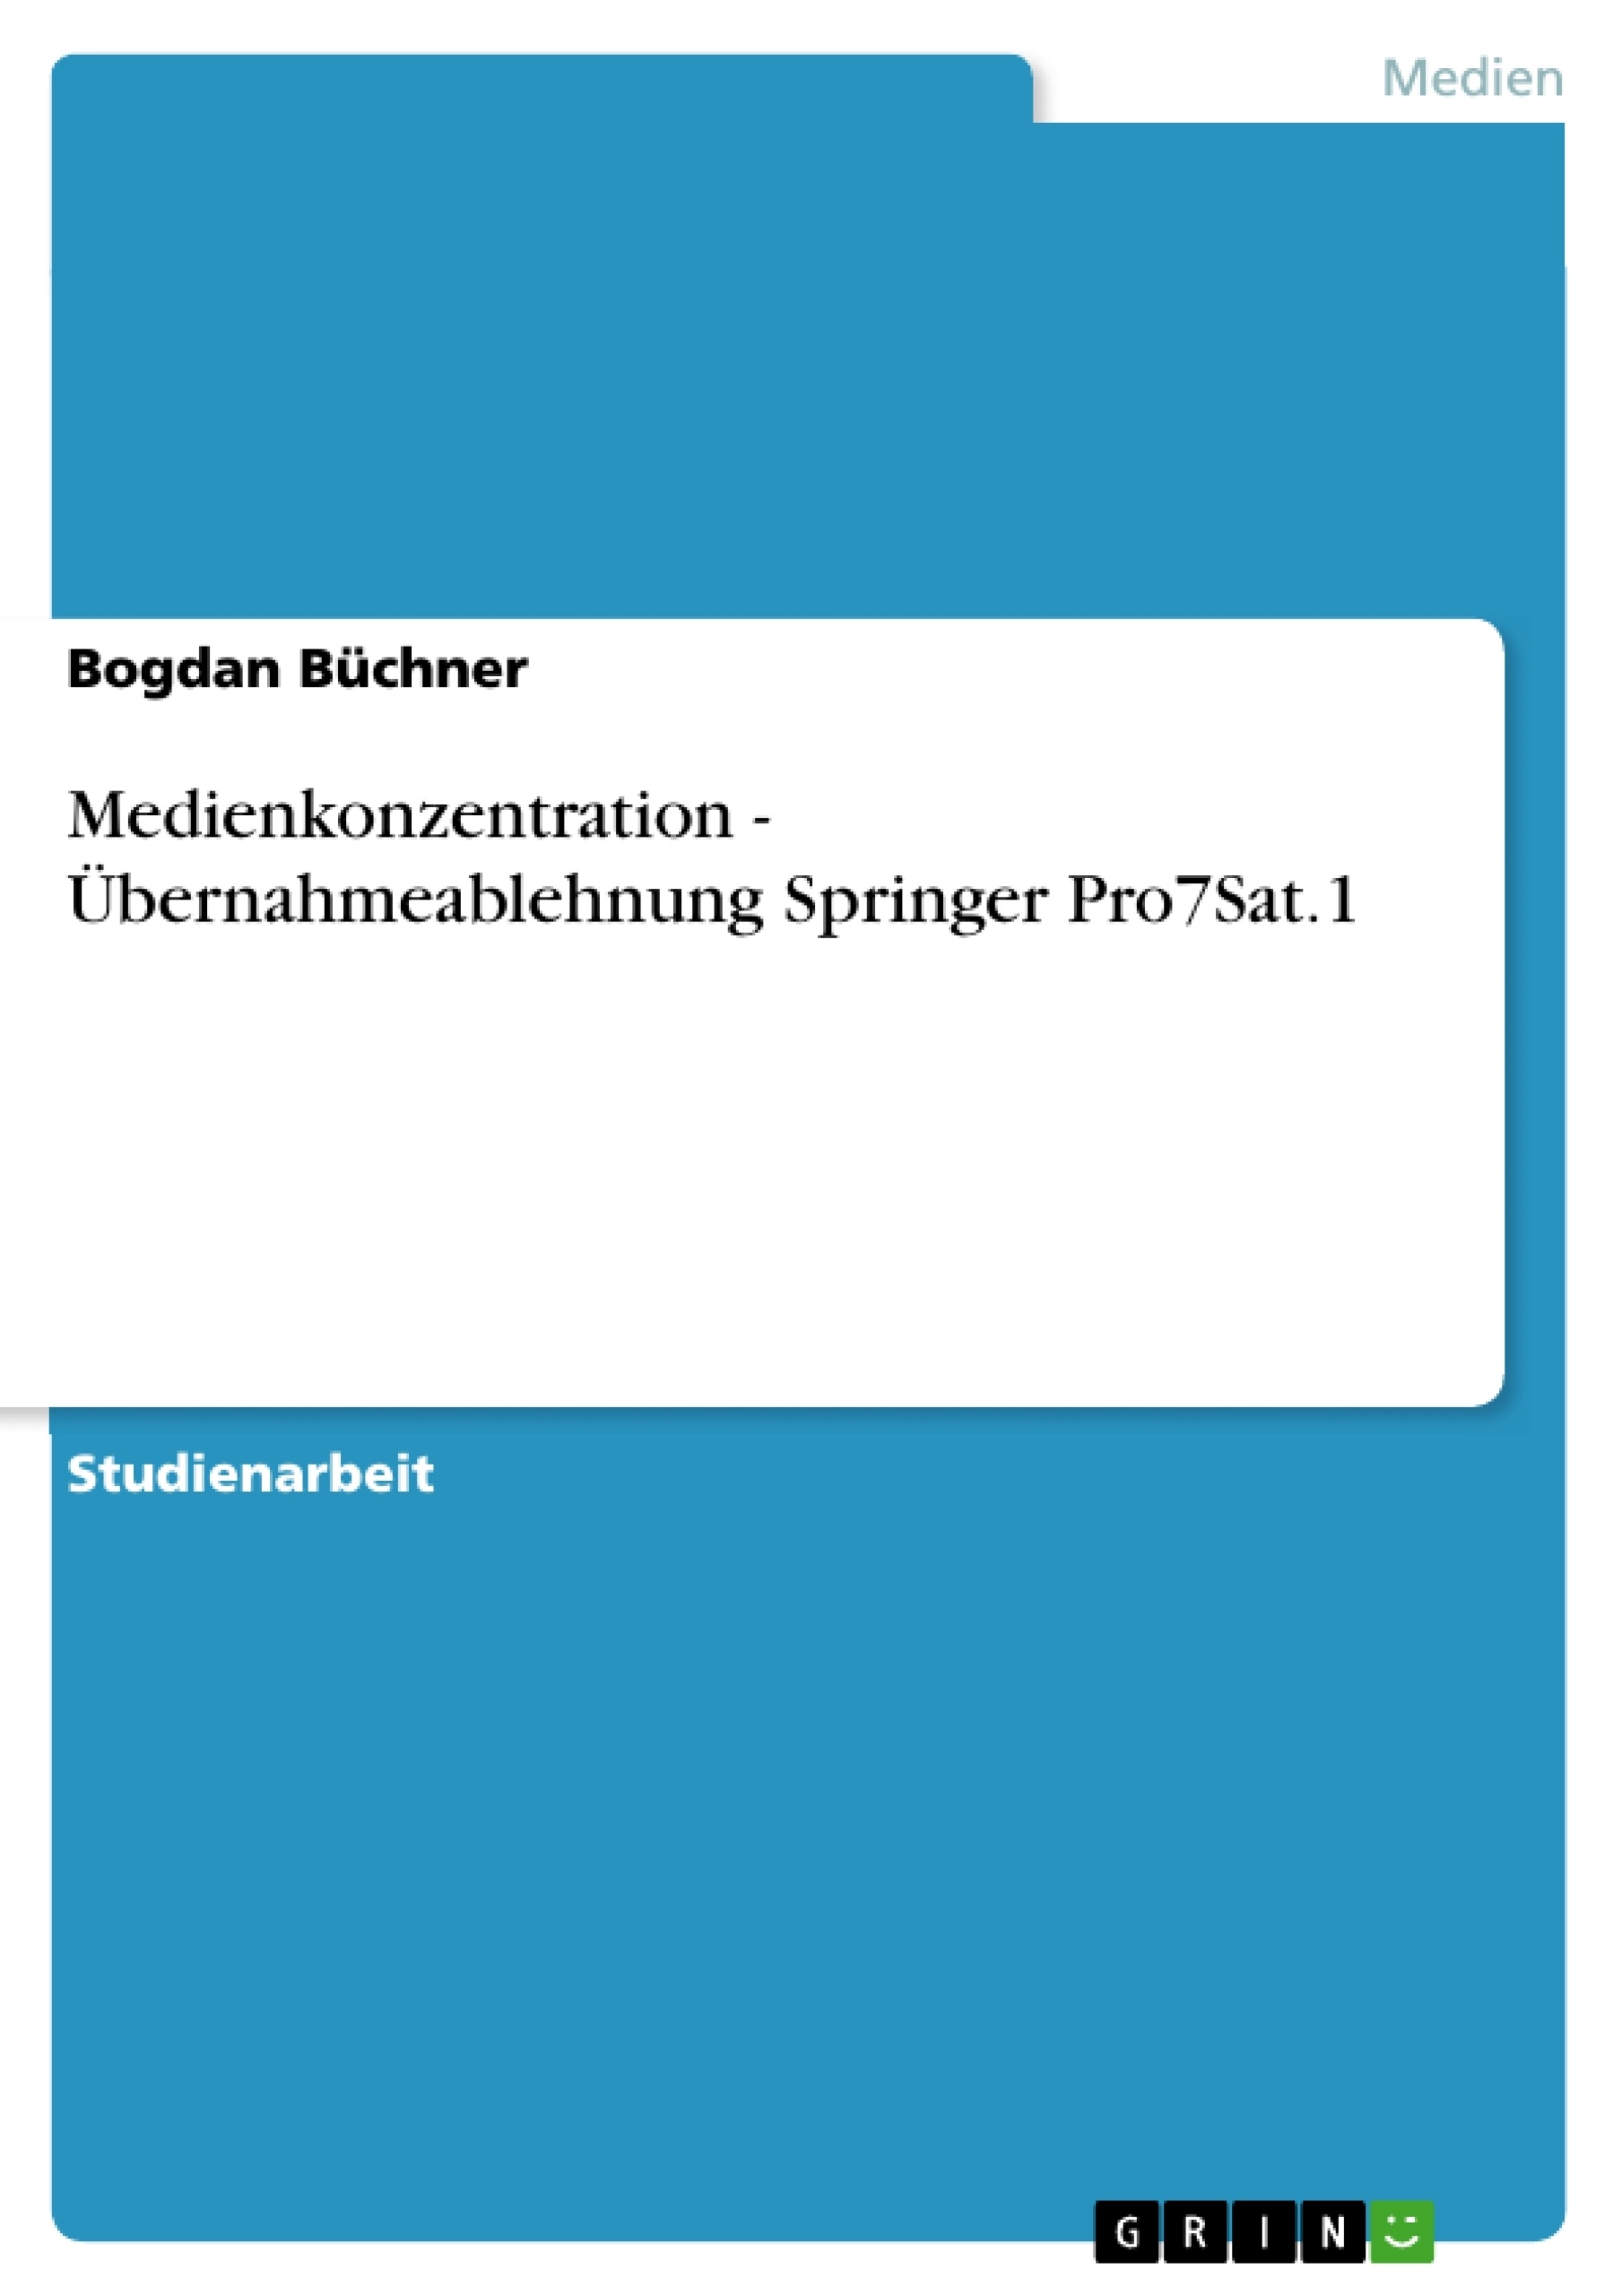 Title: Medienkonzentration - Übernahmeablehnung Springer Pro7Sat.1